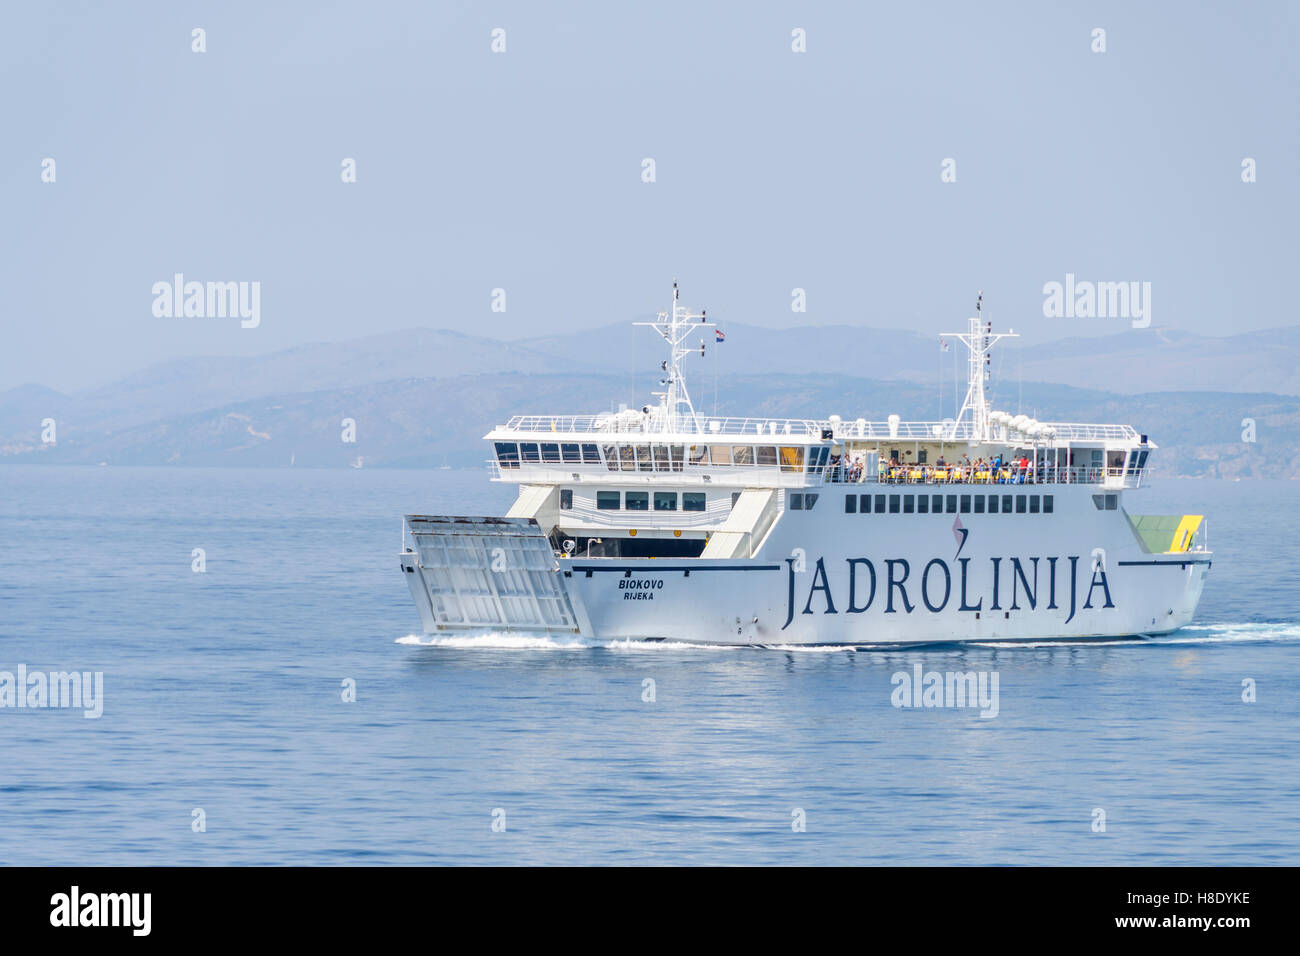 Split, Croatie - Juillet 27, 2016 : Ferry ship Biokovo sur route régulière entre Split et de Brac. Exploité par ferry Jadrolinija. Banque D'Images